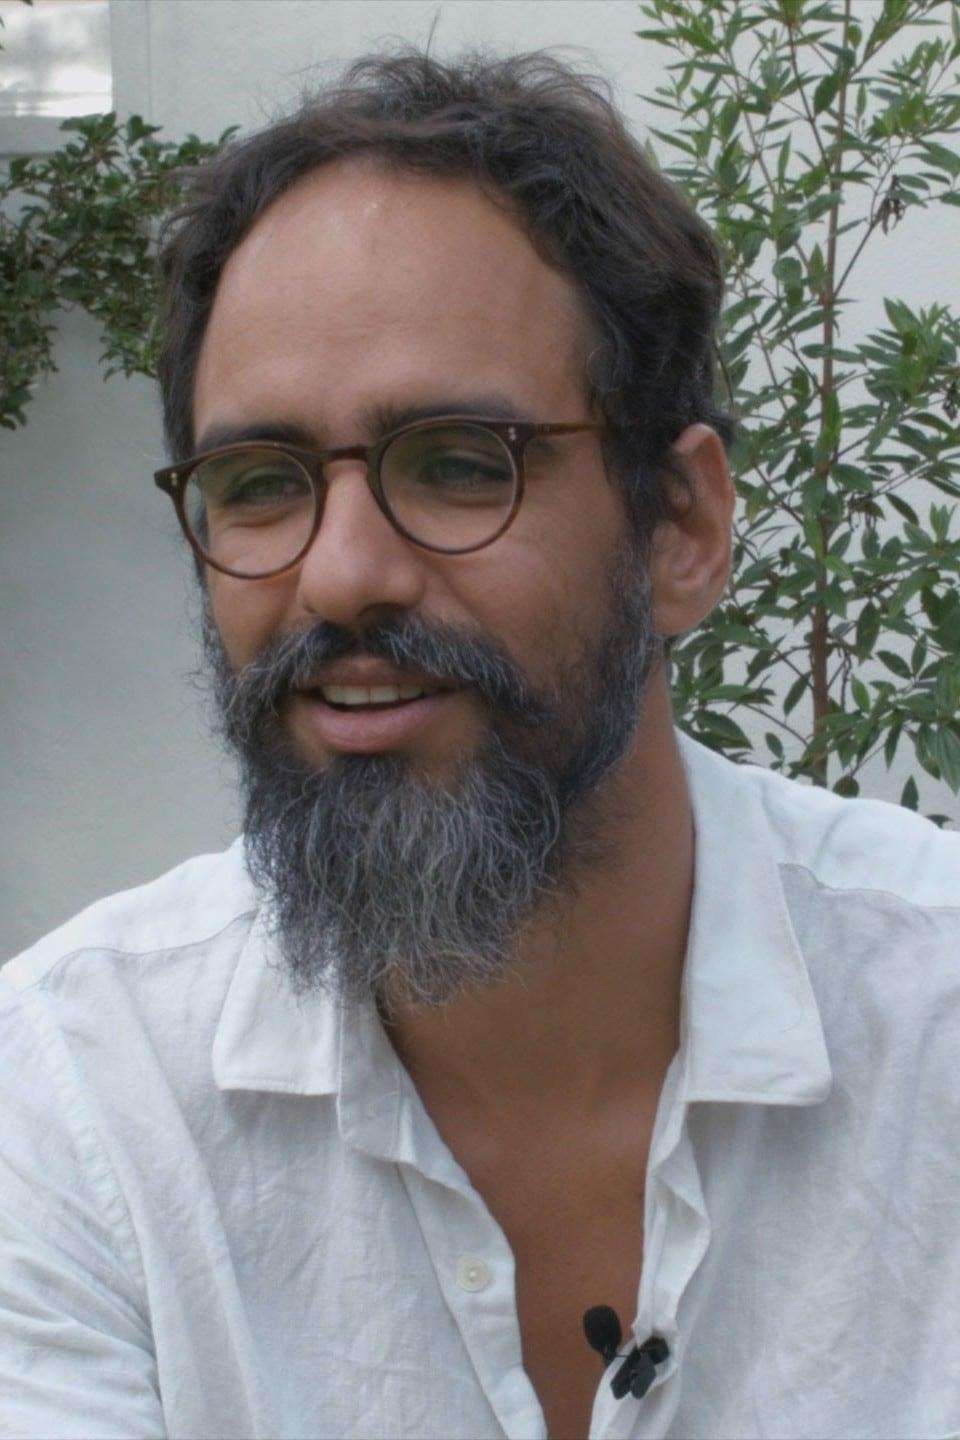 Ivo Lopes Araújo | Director of Photography